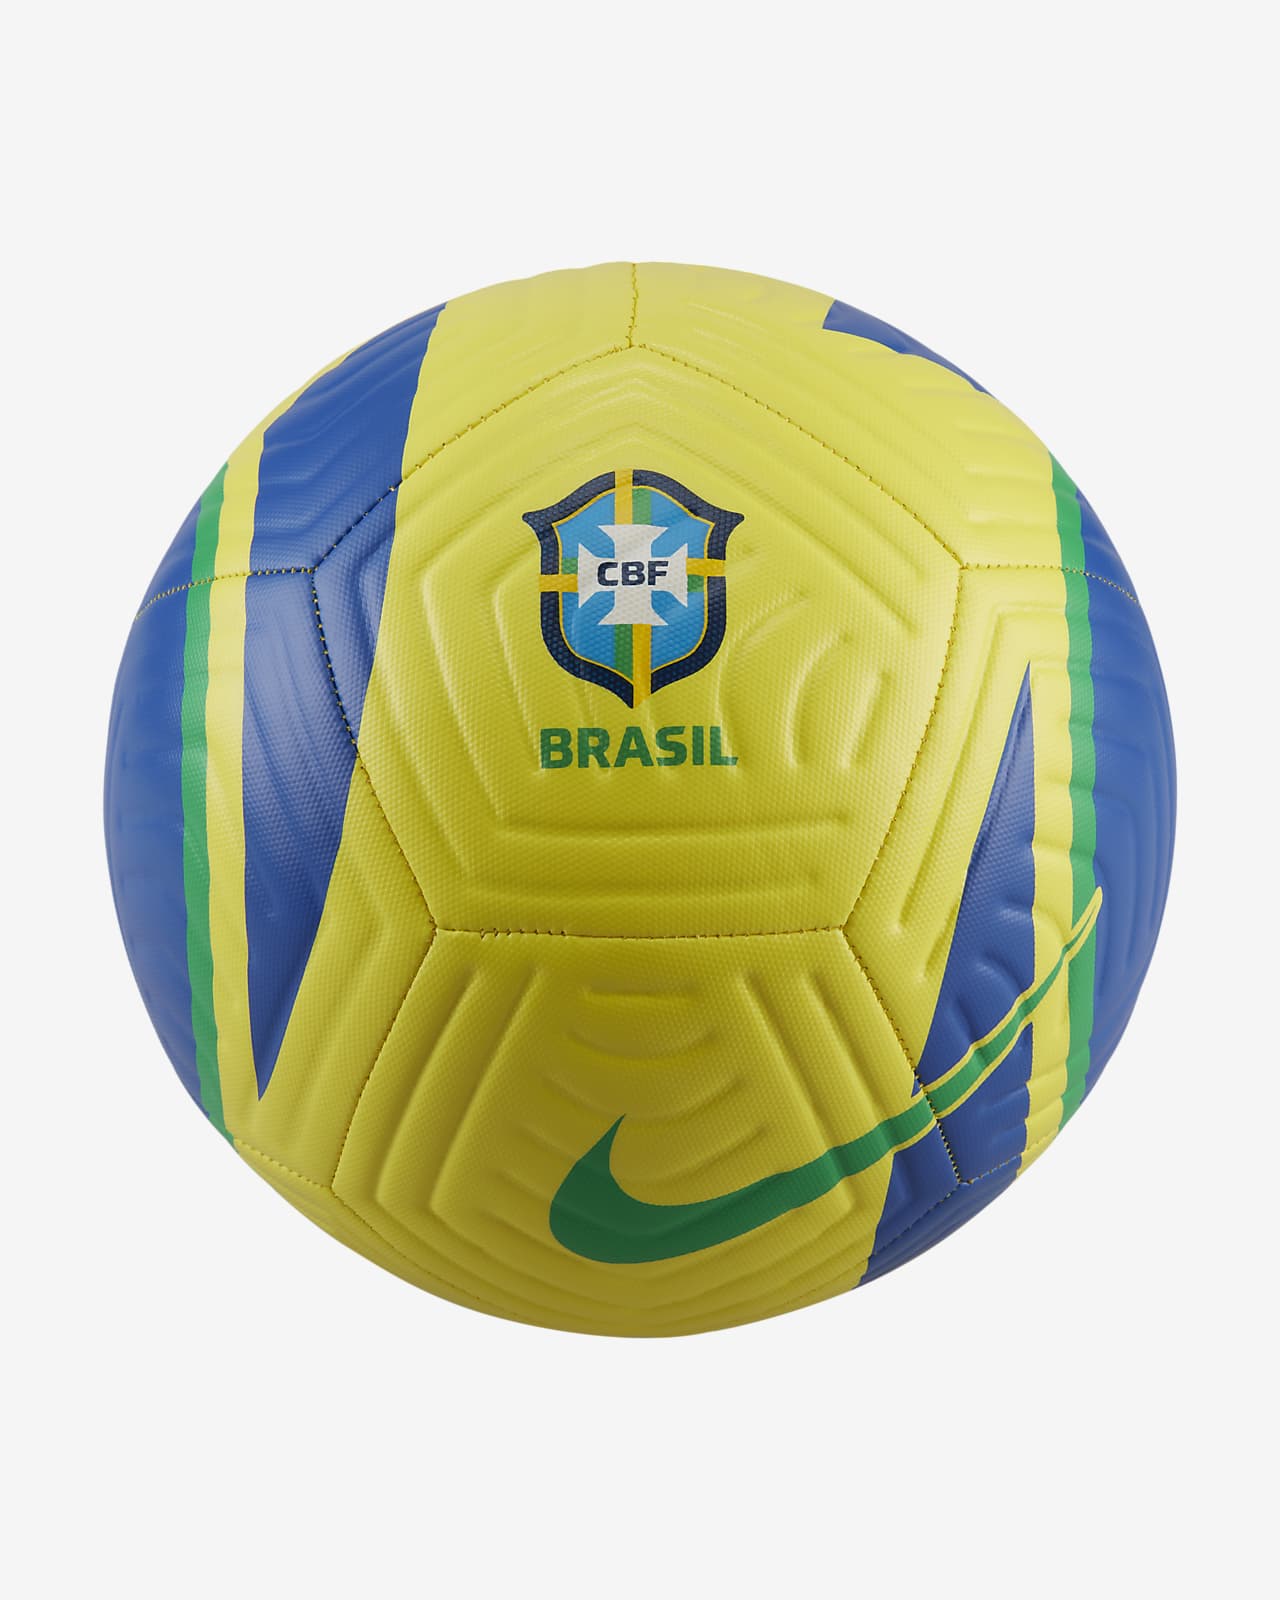 Brazil Academy Soccer Ball